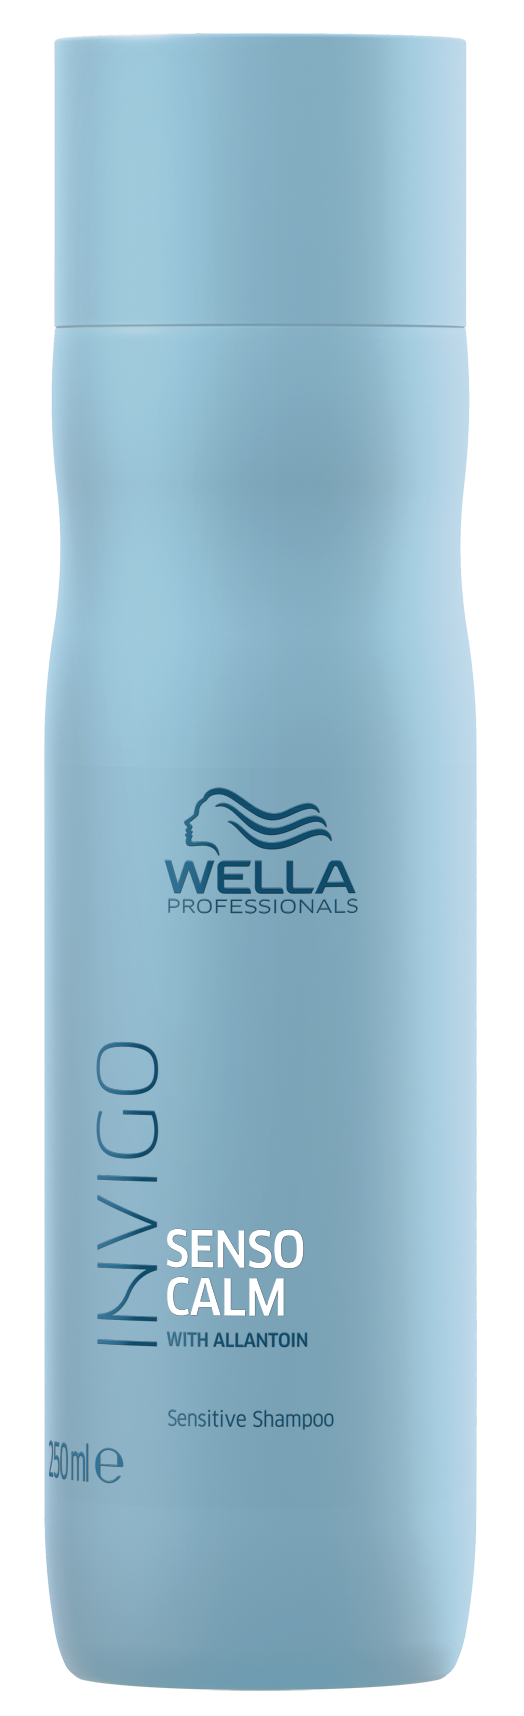 Шампунь Wella Professionals Для чувствительной кожи головы 250 мл wella professionals шампунь обновляющий elements 30 мл